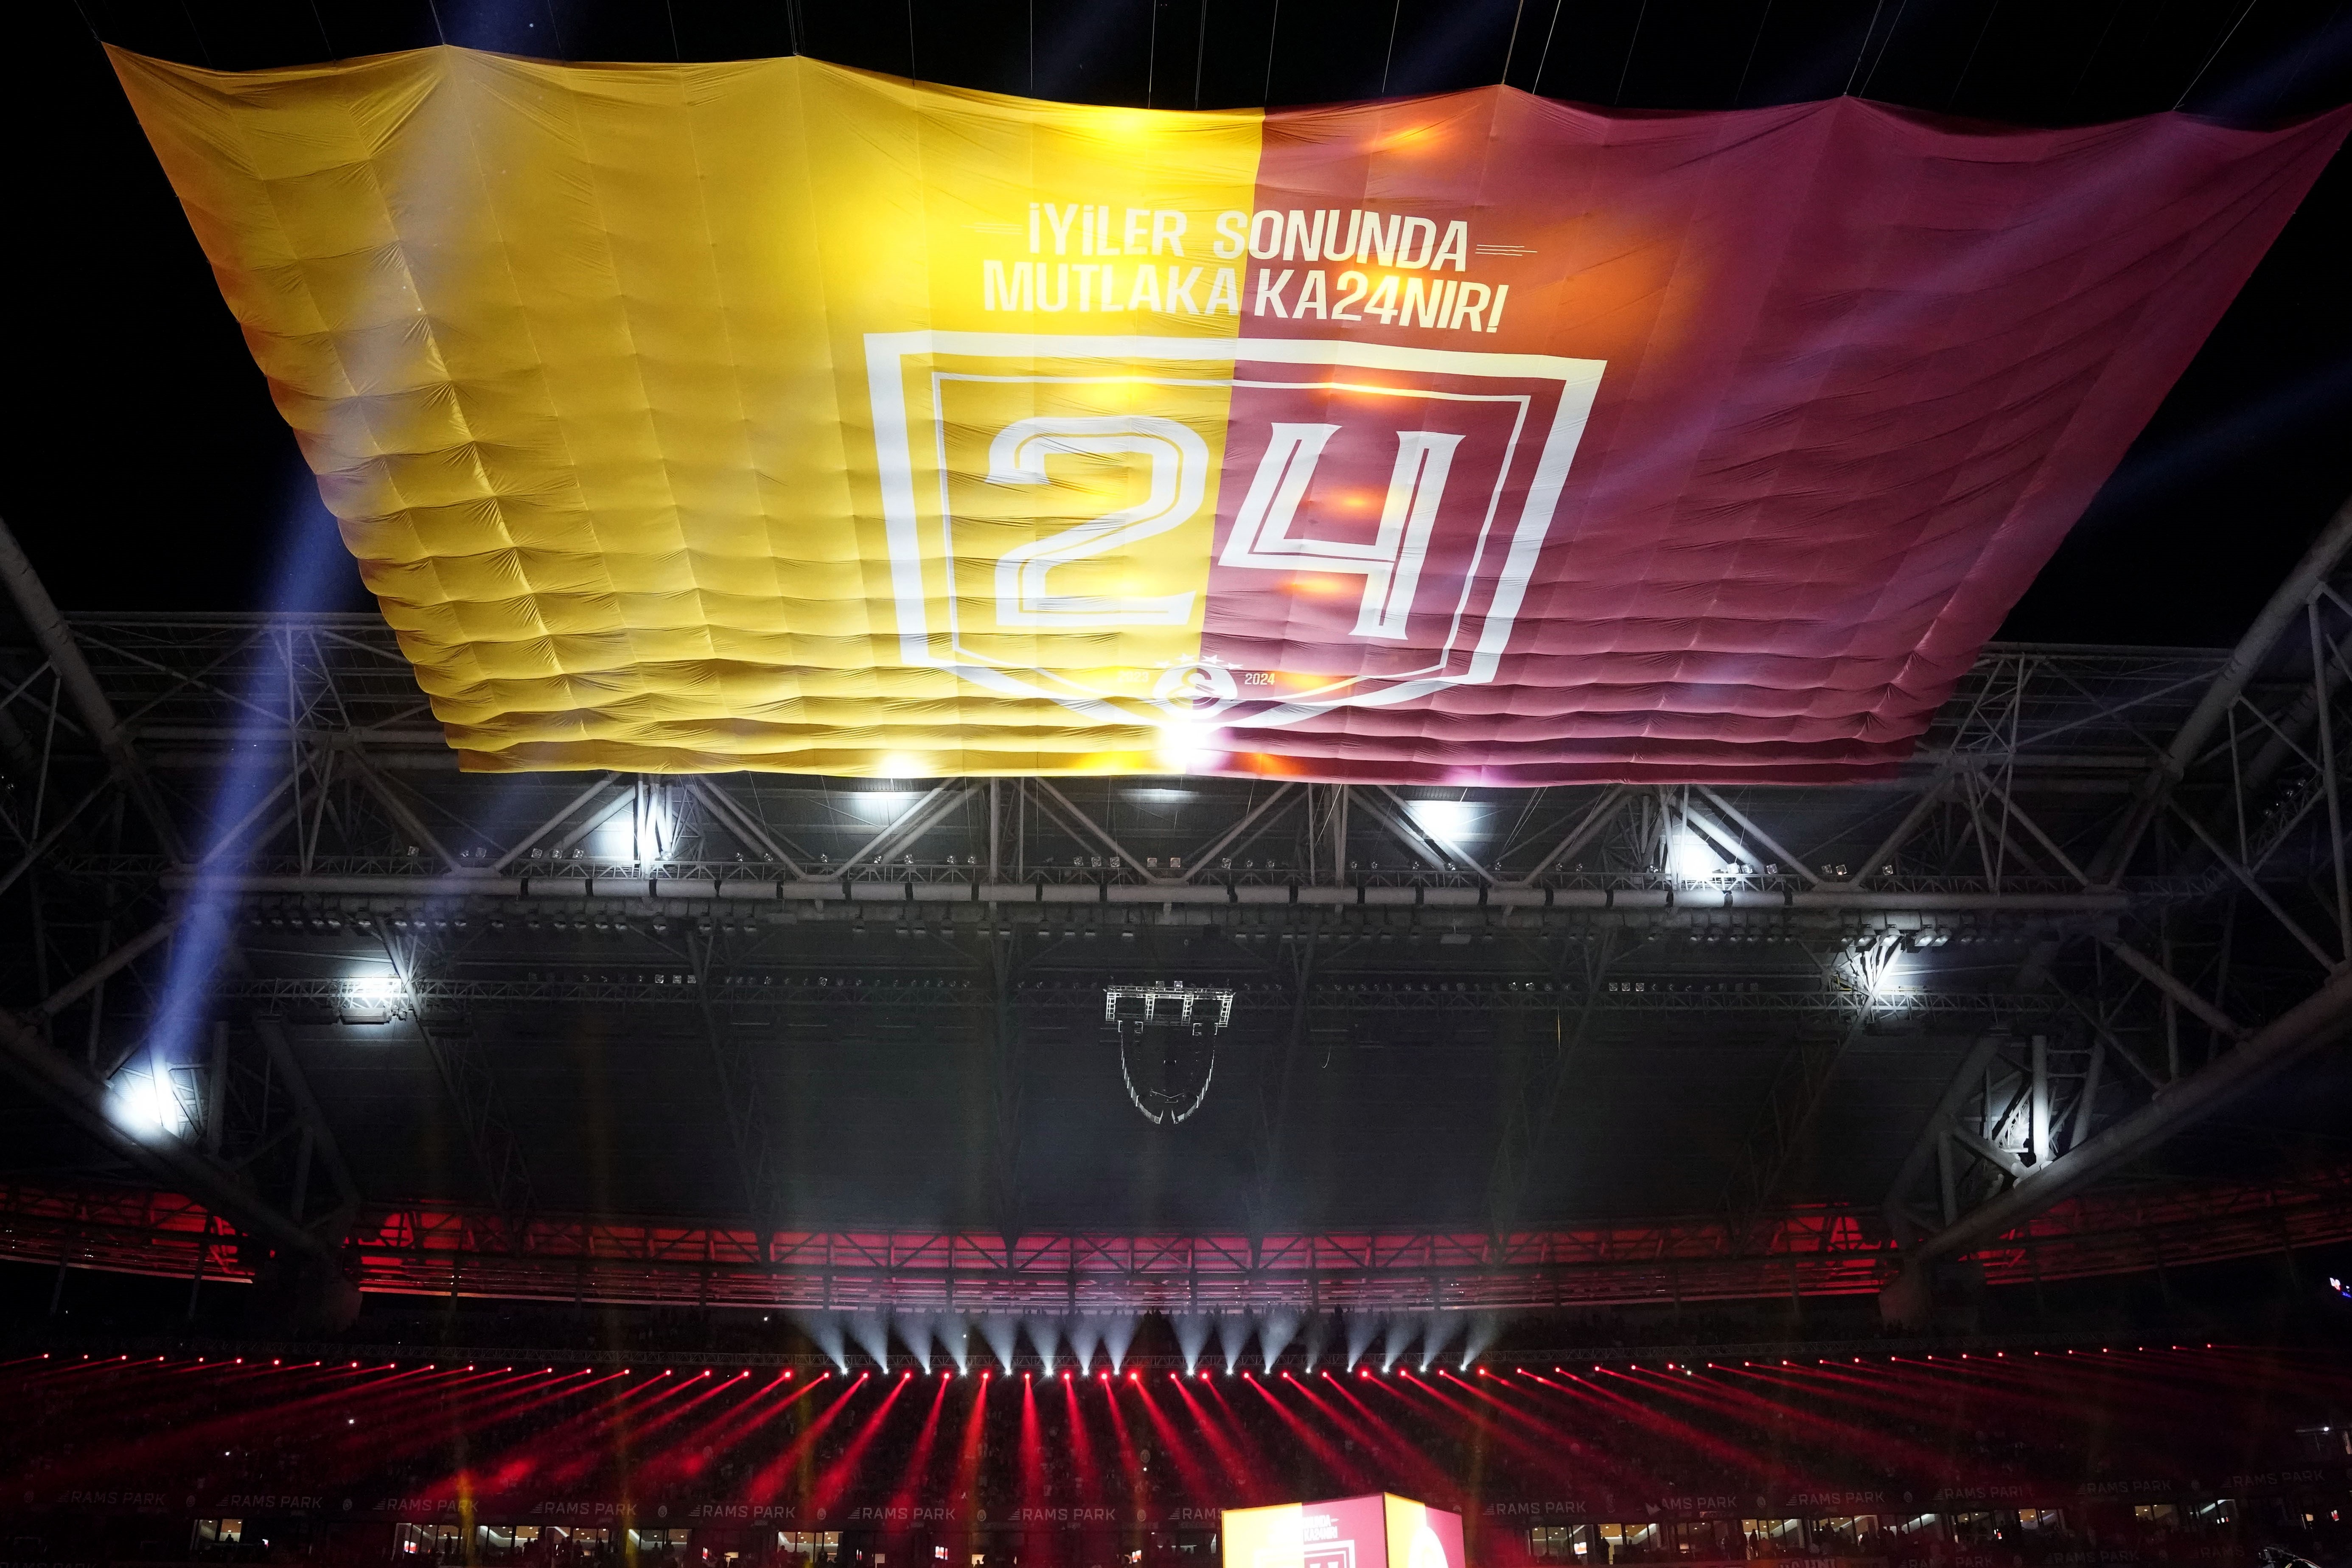 Galatasaray’dan 3 kupalı kutlama